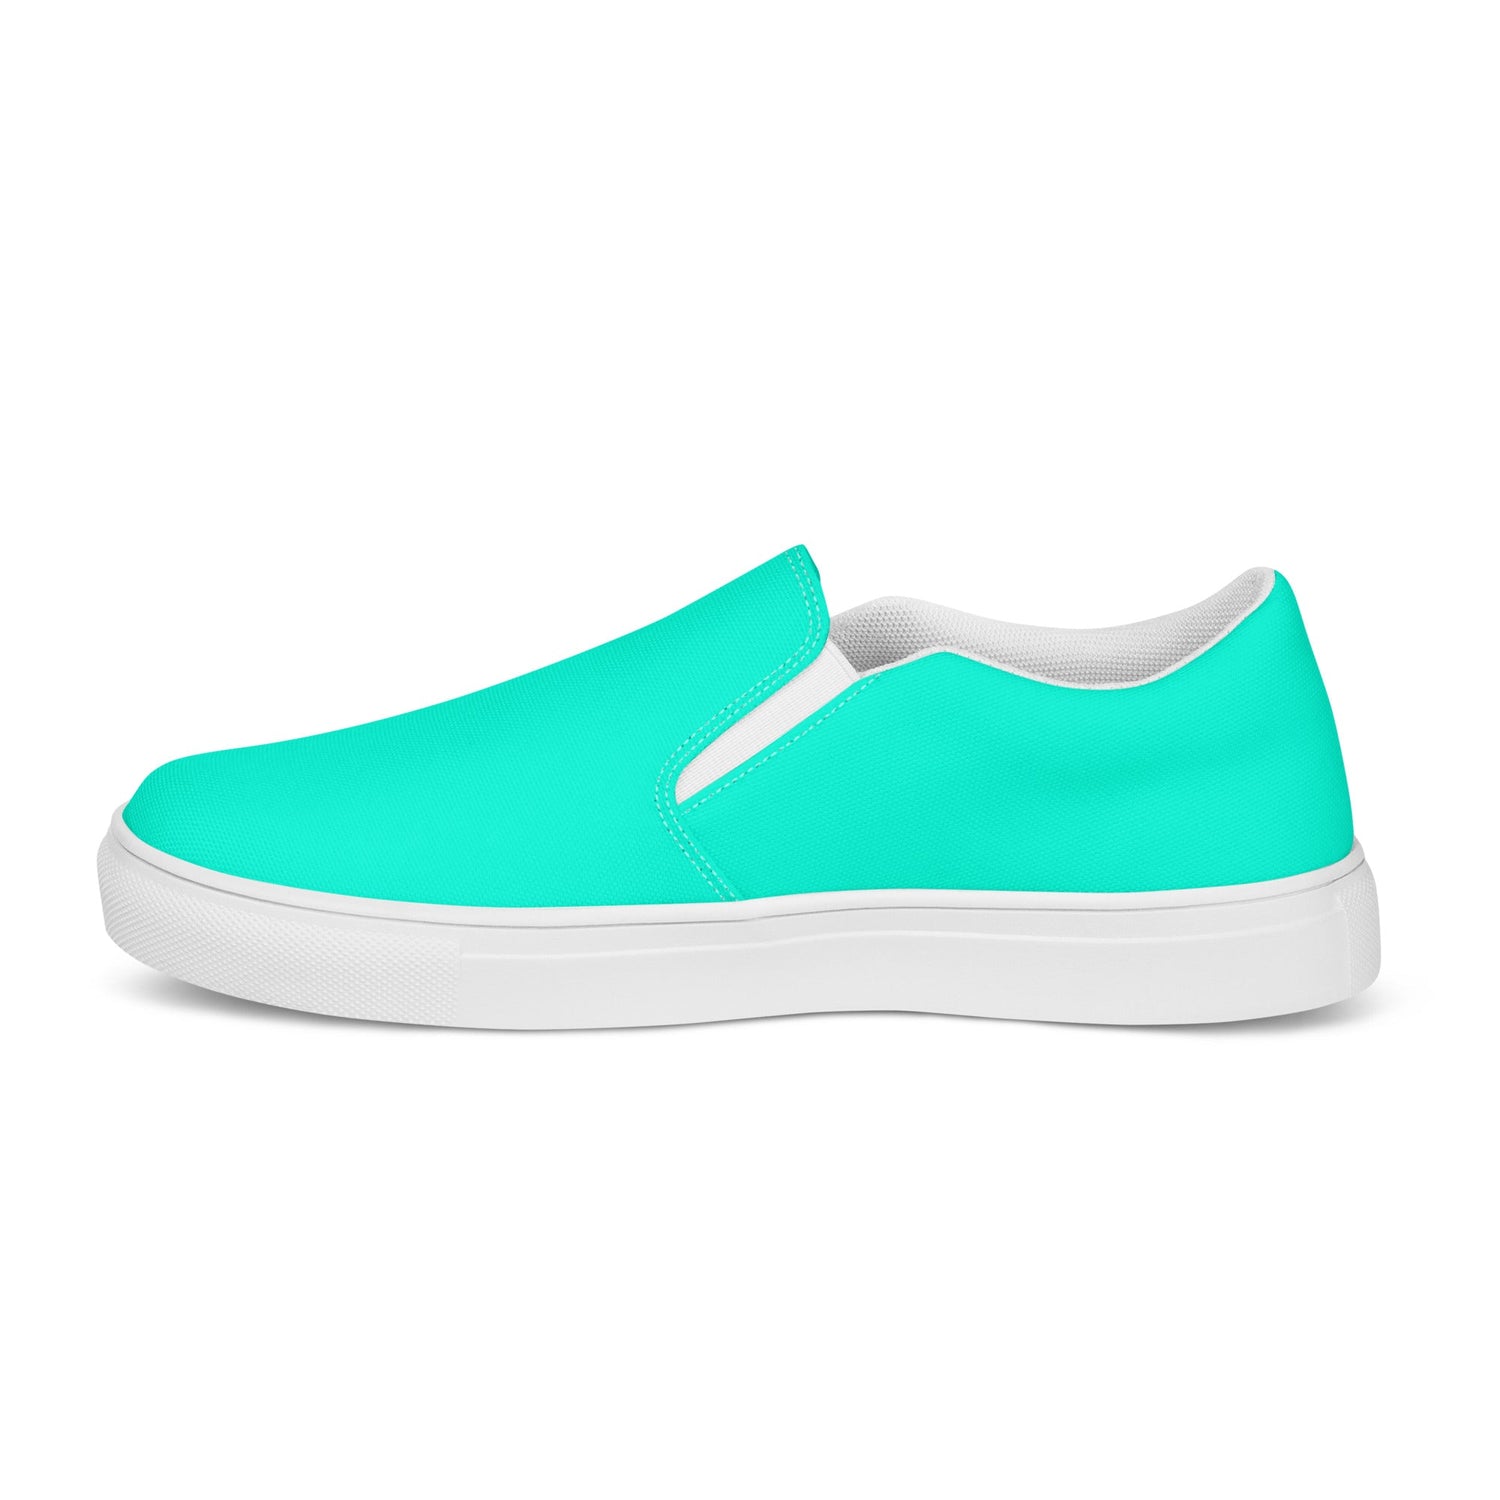 klasneakers Men’s slip-on canvas shoes - Cool Blue Aqua Green